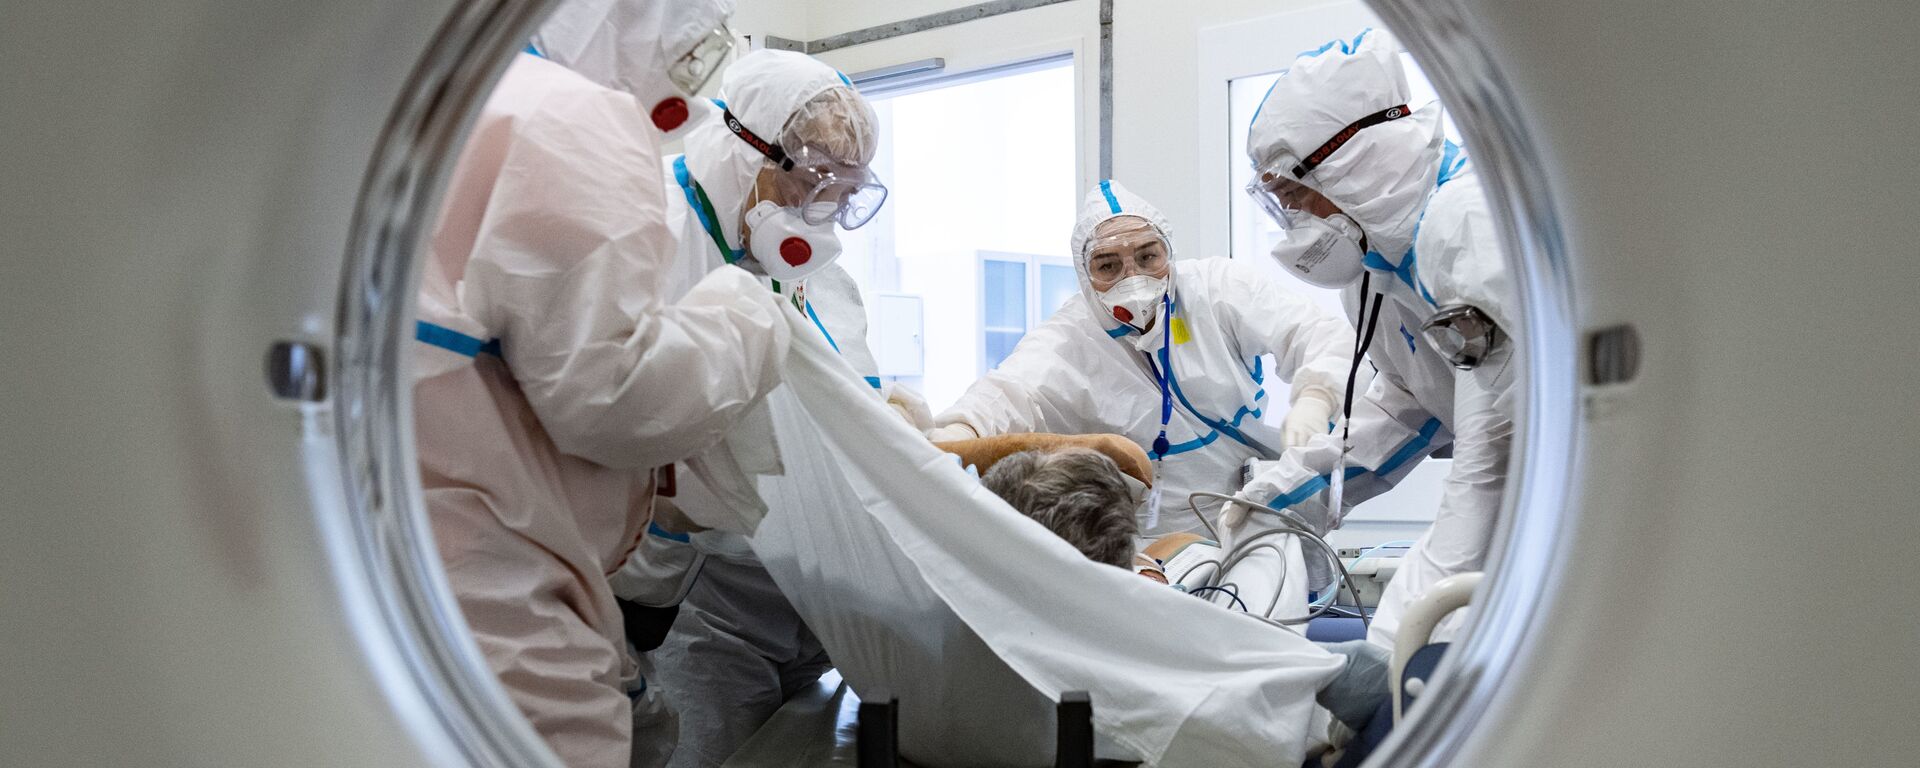 Медики помещают пациента в аппарат компьютерной томографии в городской клинической больнице №40 в Москве - Sputnik Таджикистан, 1920, 21.04.2021